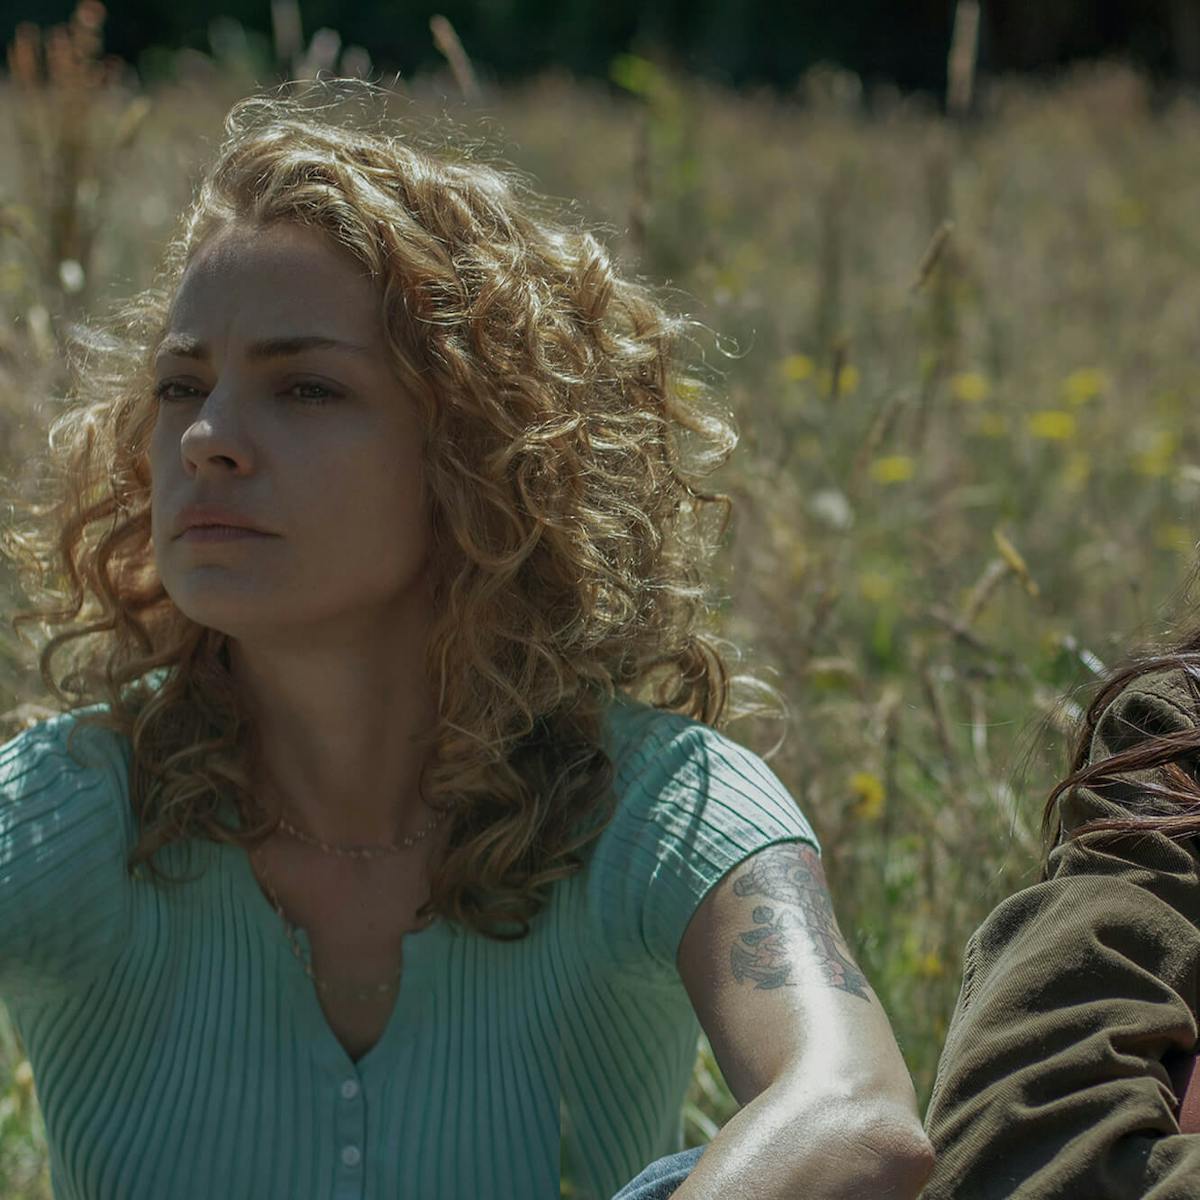 Carola (Dolores Fonzi) y Amanda (María Valverde) se sientan en un campo de flores silvestres y pasto. Carola usa una camisa abotonada color turquesa y Amanda una chaqueta de color oscuro.